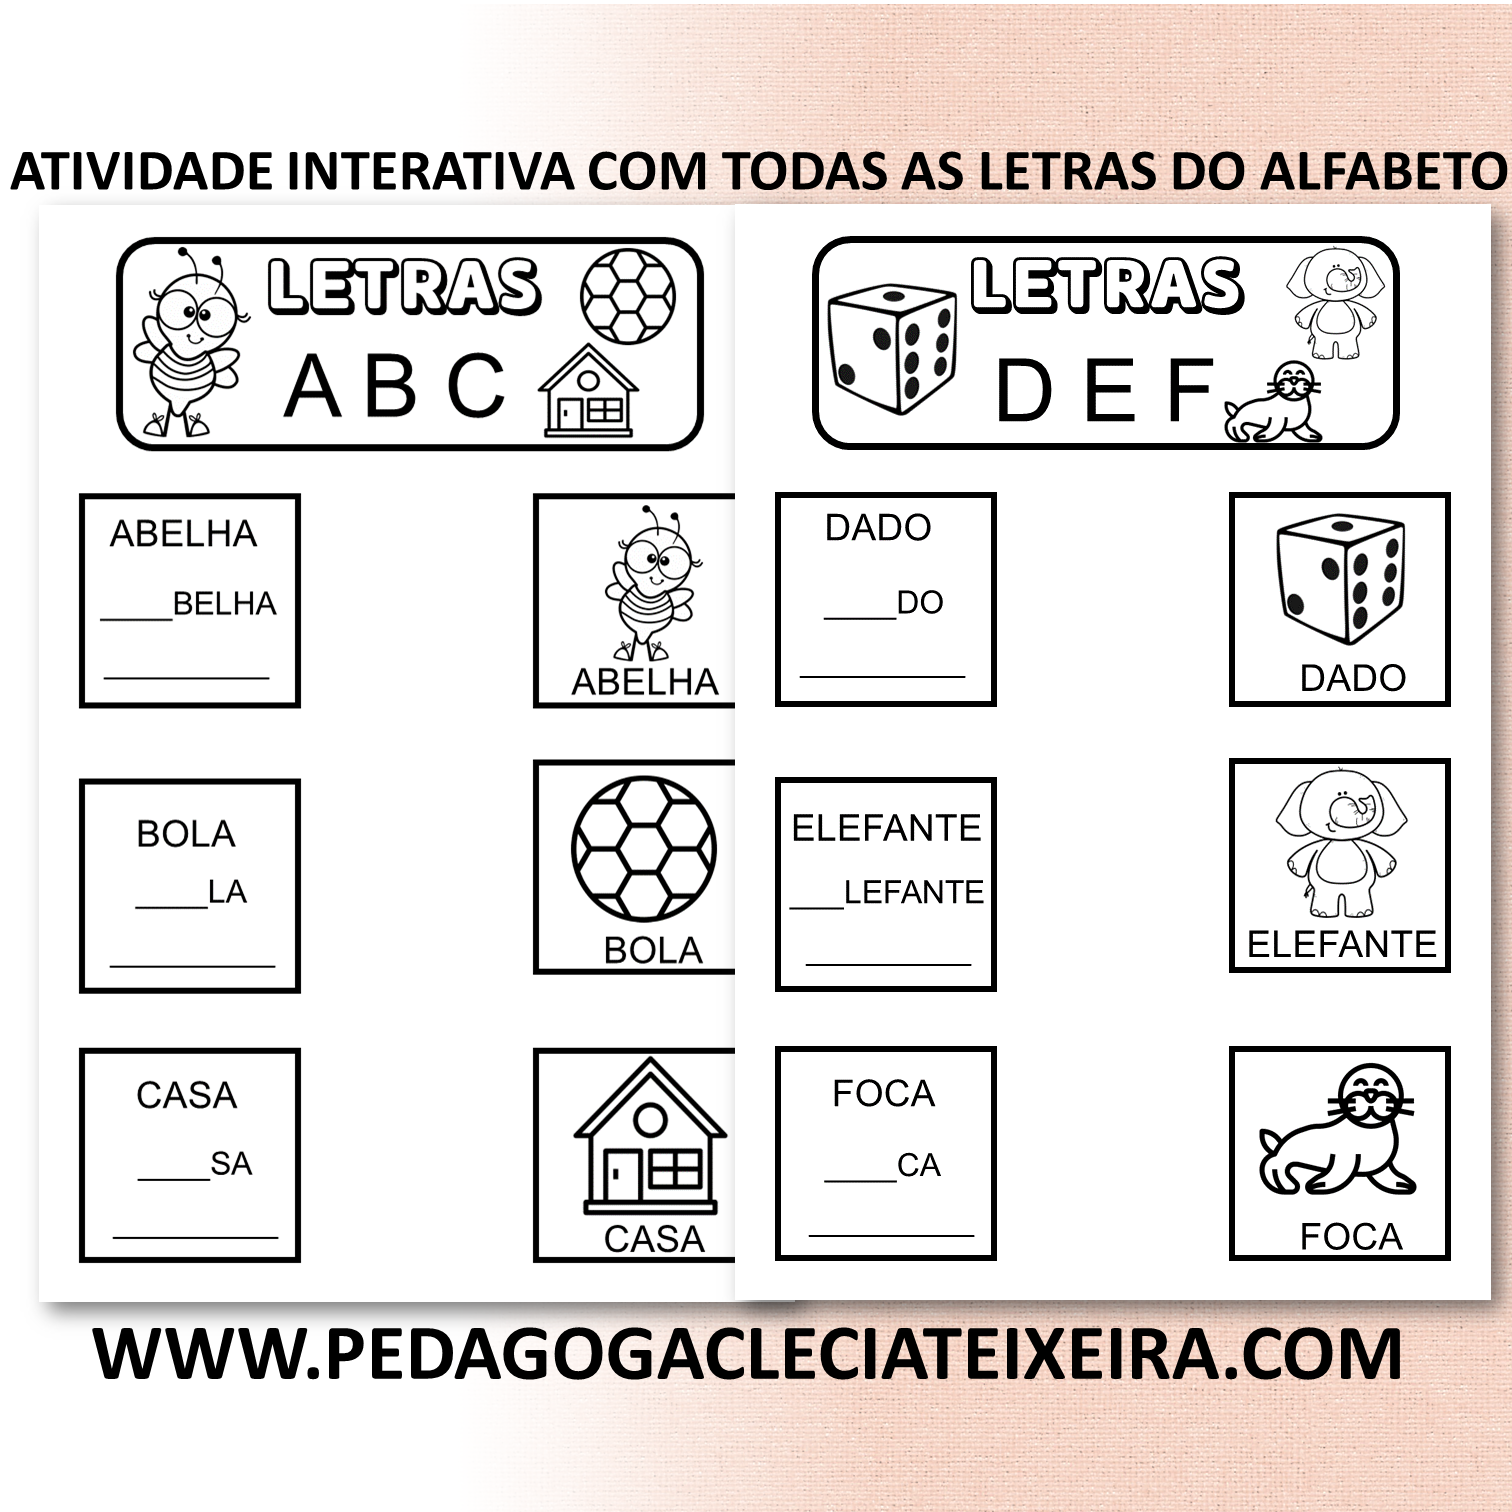 Atividade interativa com todas as letras do alfabeto